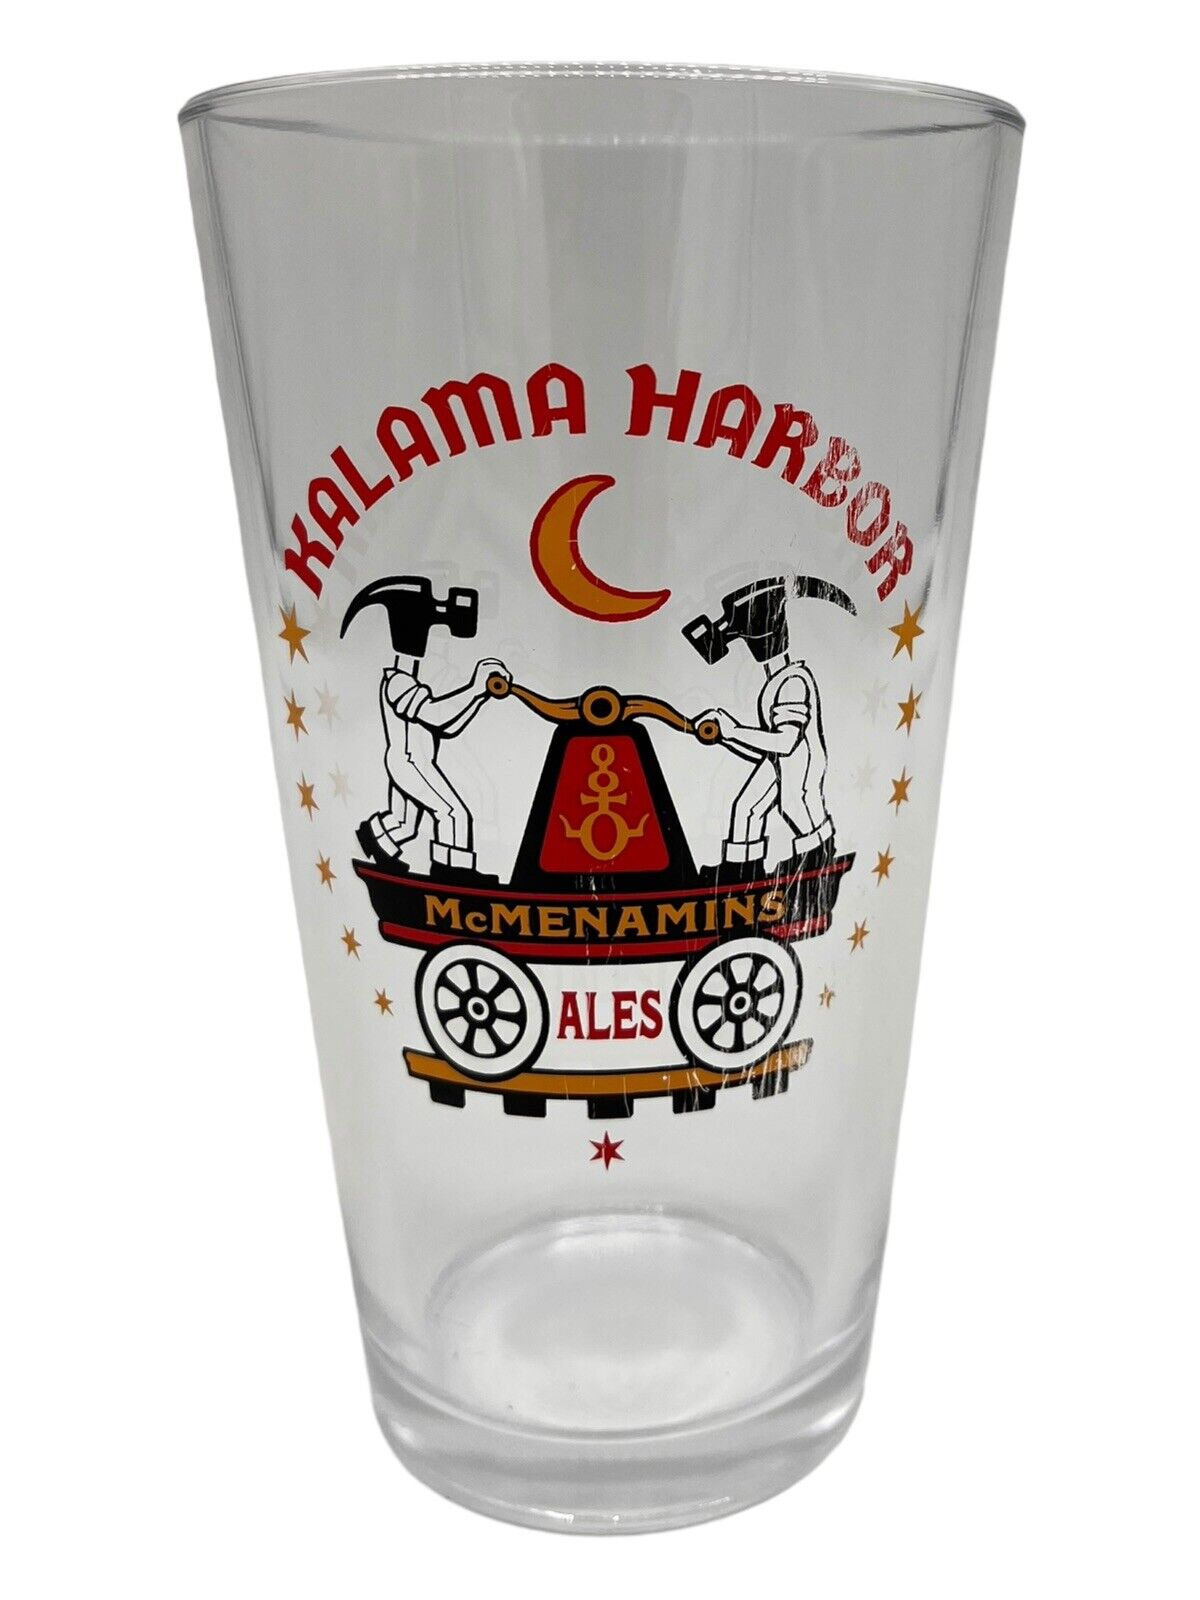 Vintage McMenamins Kalama Harbor Ales Pint Glass - Collectible Barware